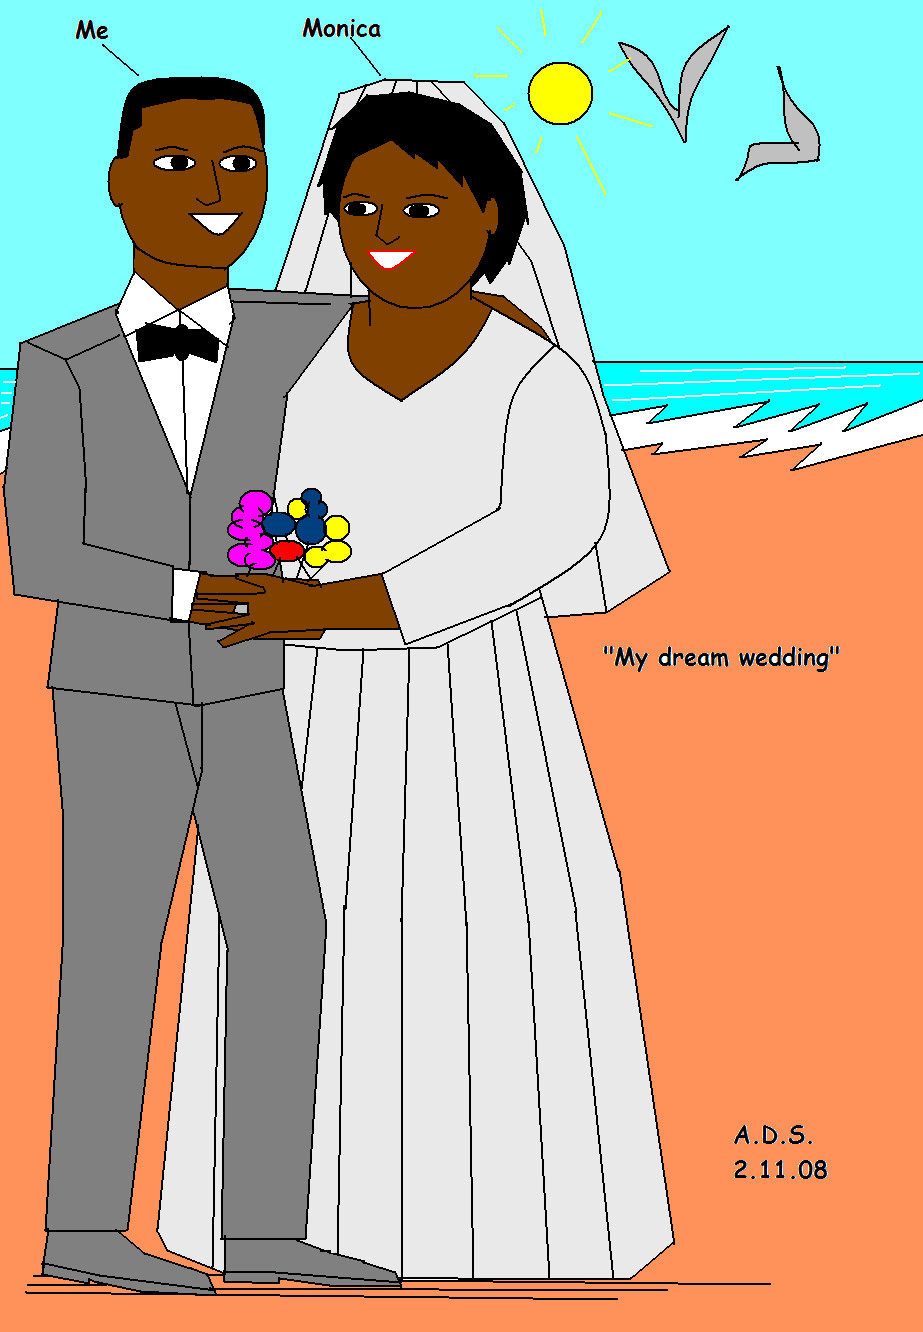 My dream wedding by adsheppard